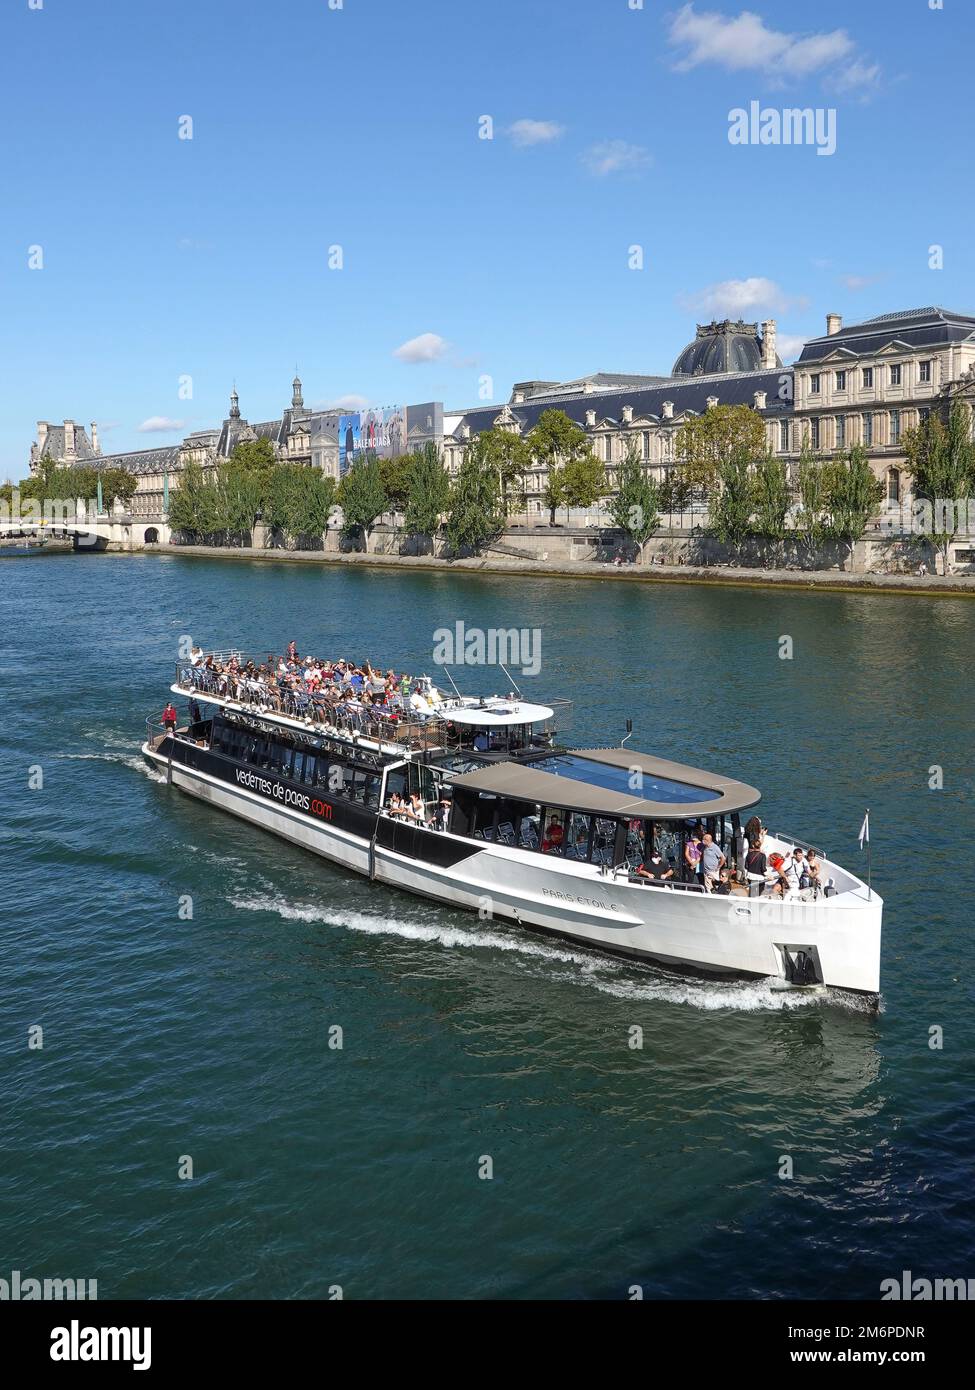 Francia París, Musee d'Orsay y el río Sena, barcos turísticos que navegan por el río Sena. Foto © Fabio Mazzarella/Sintesi/Alamy Foto de archivo Foto de stock